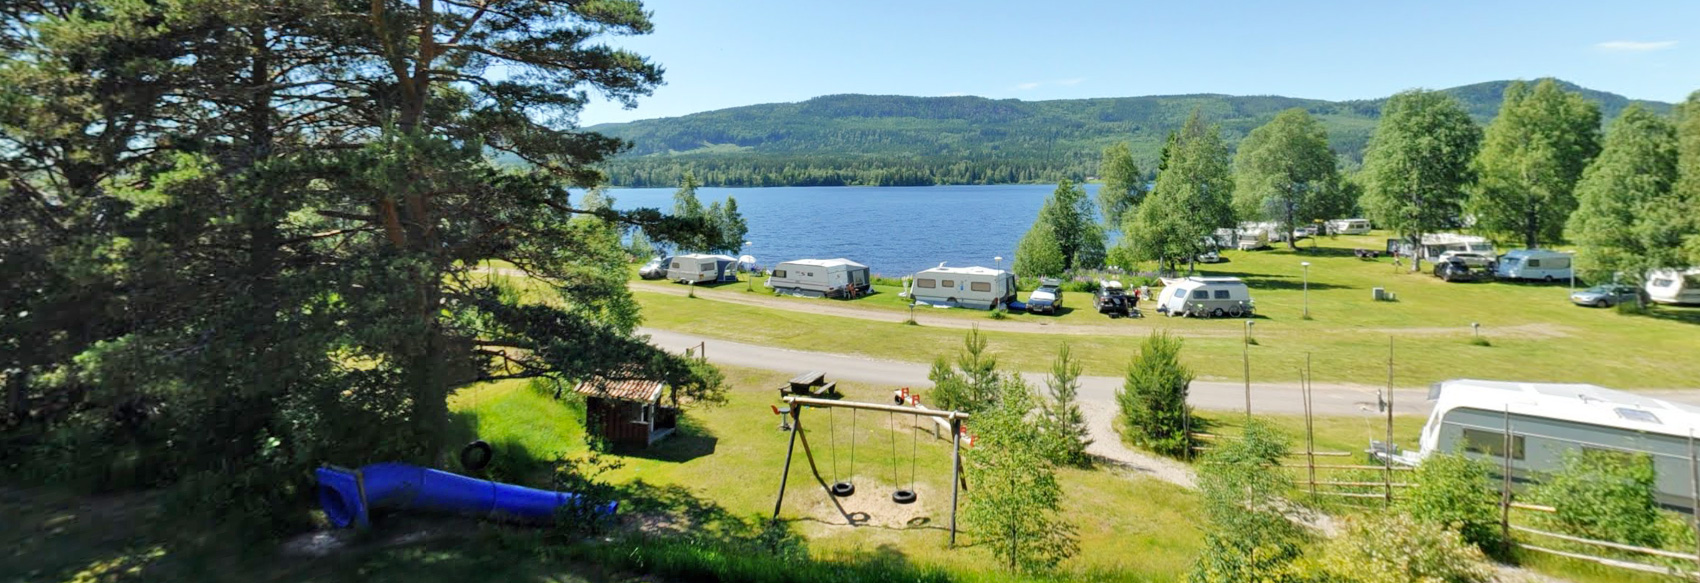 Om oss - Värmlands Sjö och Fjäll Camping utanför Torsby i norra Värmland, Sweden